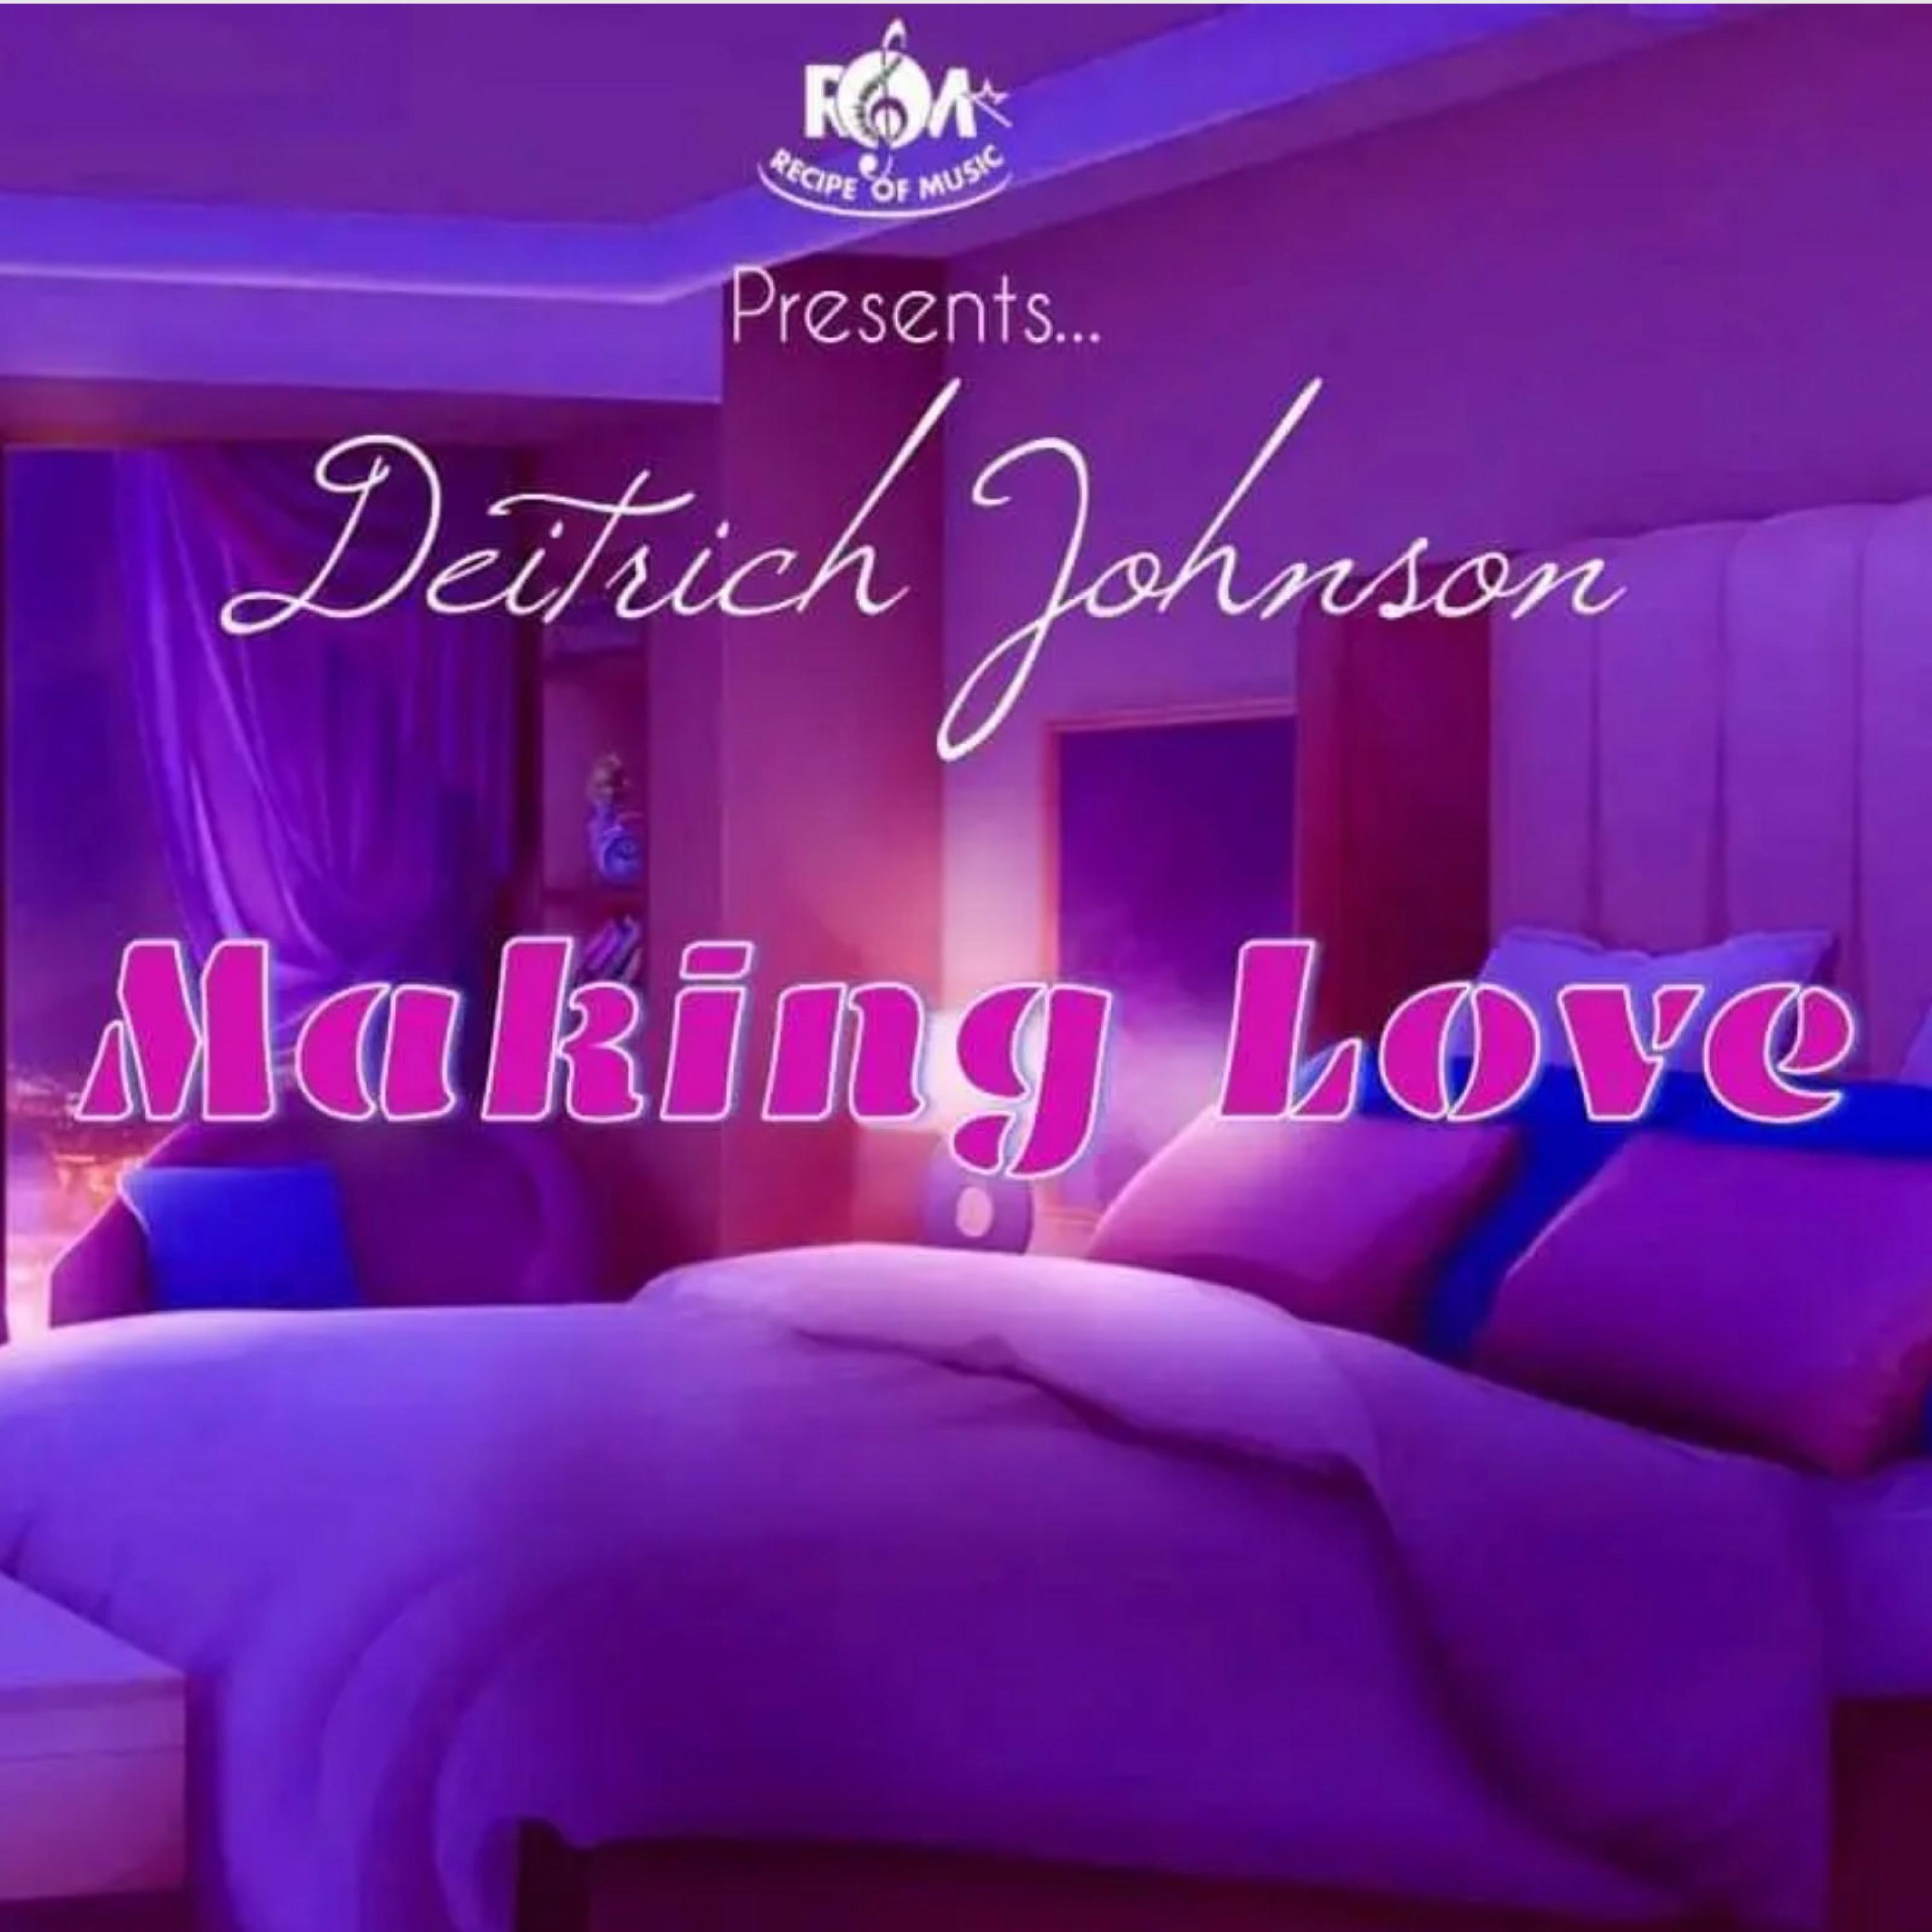 Deitrich Johnson - Making Love